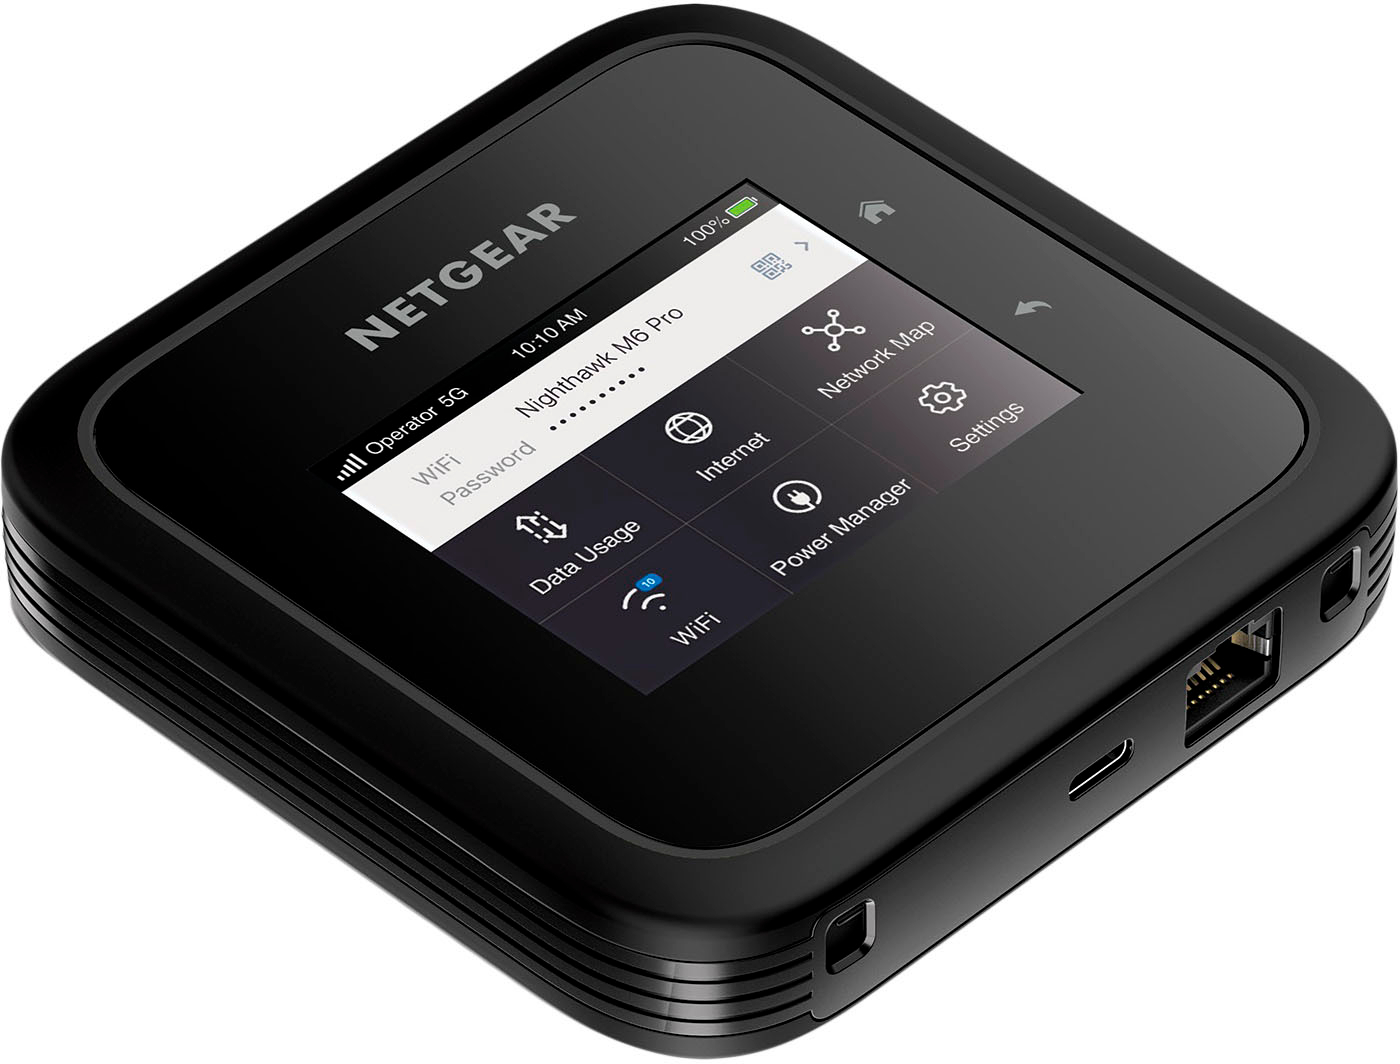 Routeur 5G mobile Nighthawk M6 Pro WiFi 6E - MR6450 – NETGEAR